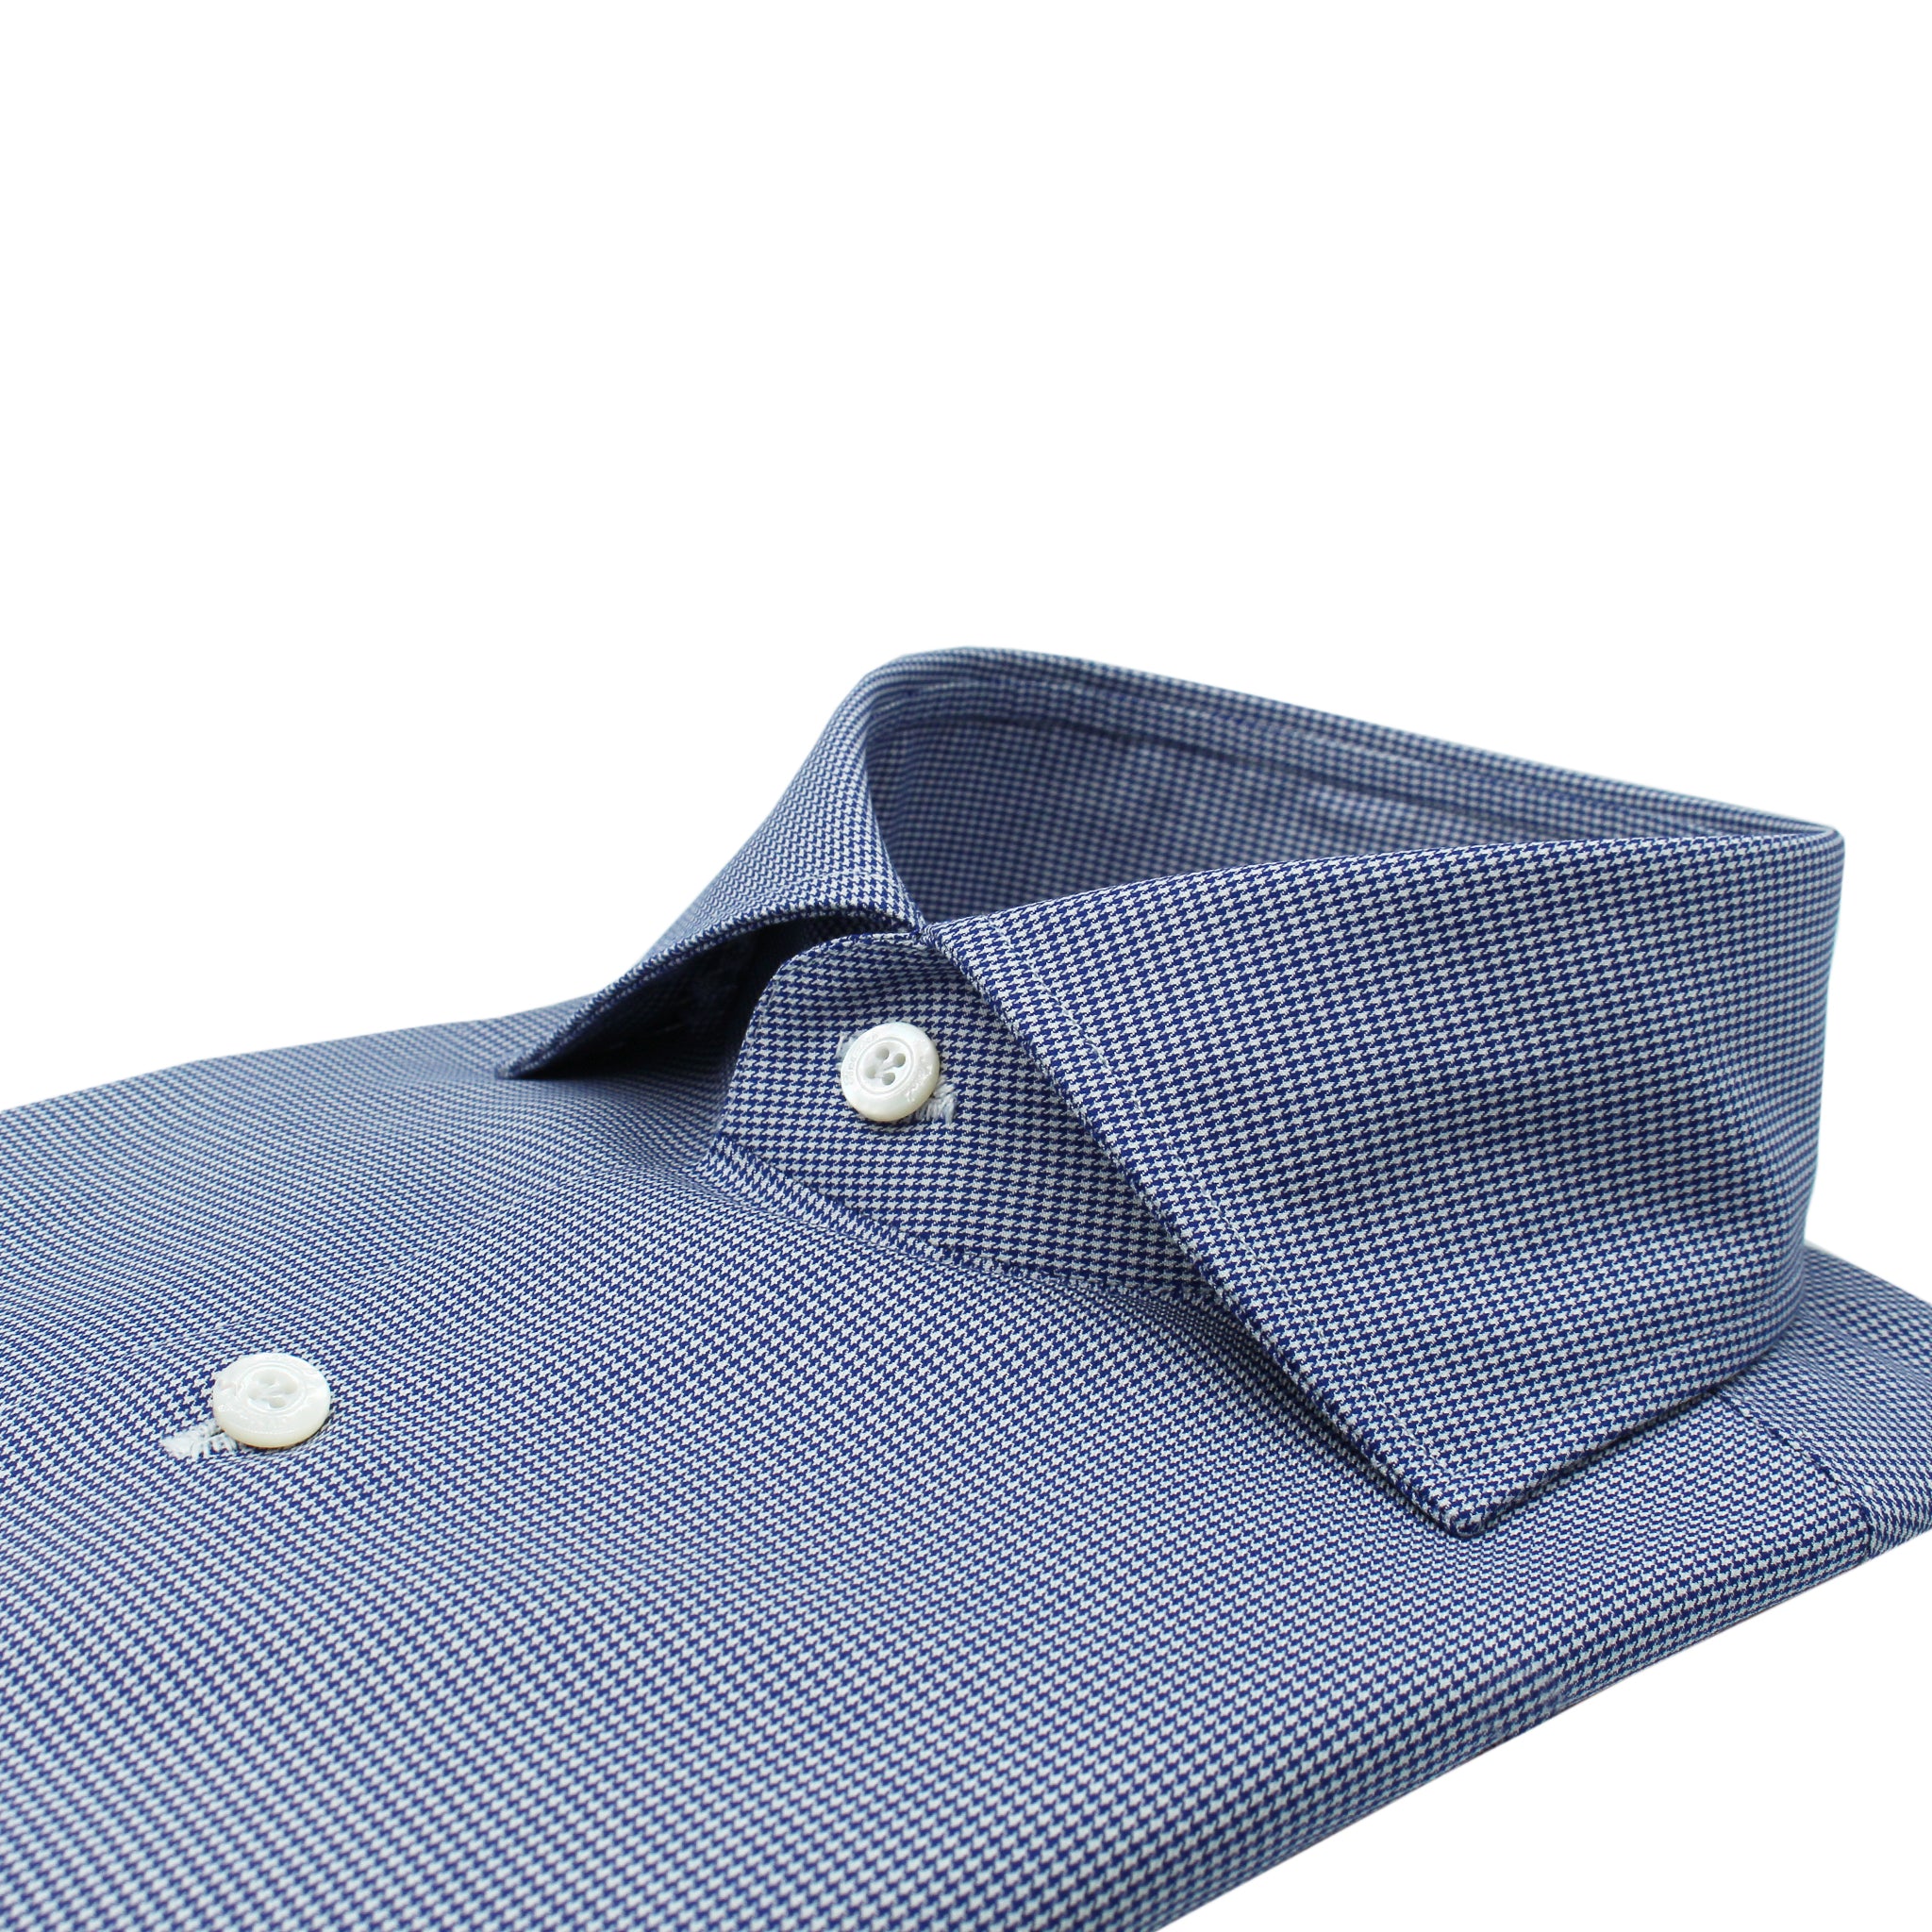 Naples classic blue pied de poule cotton shirt